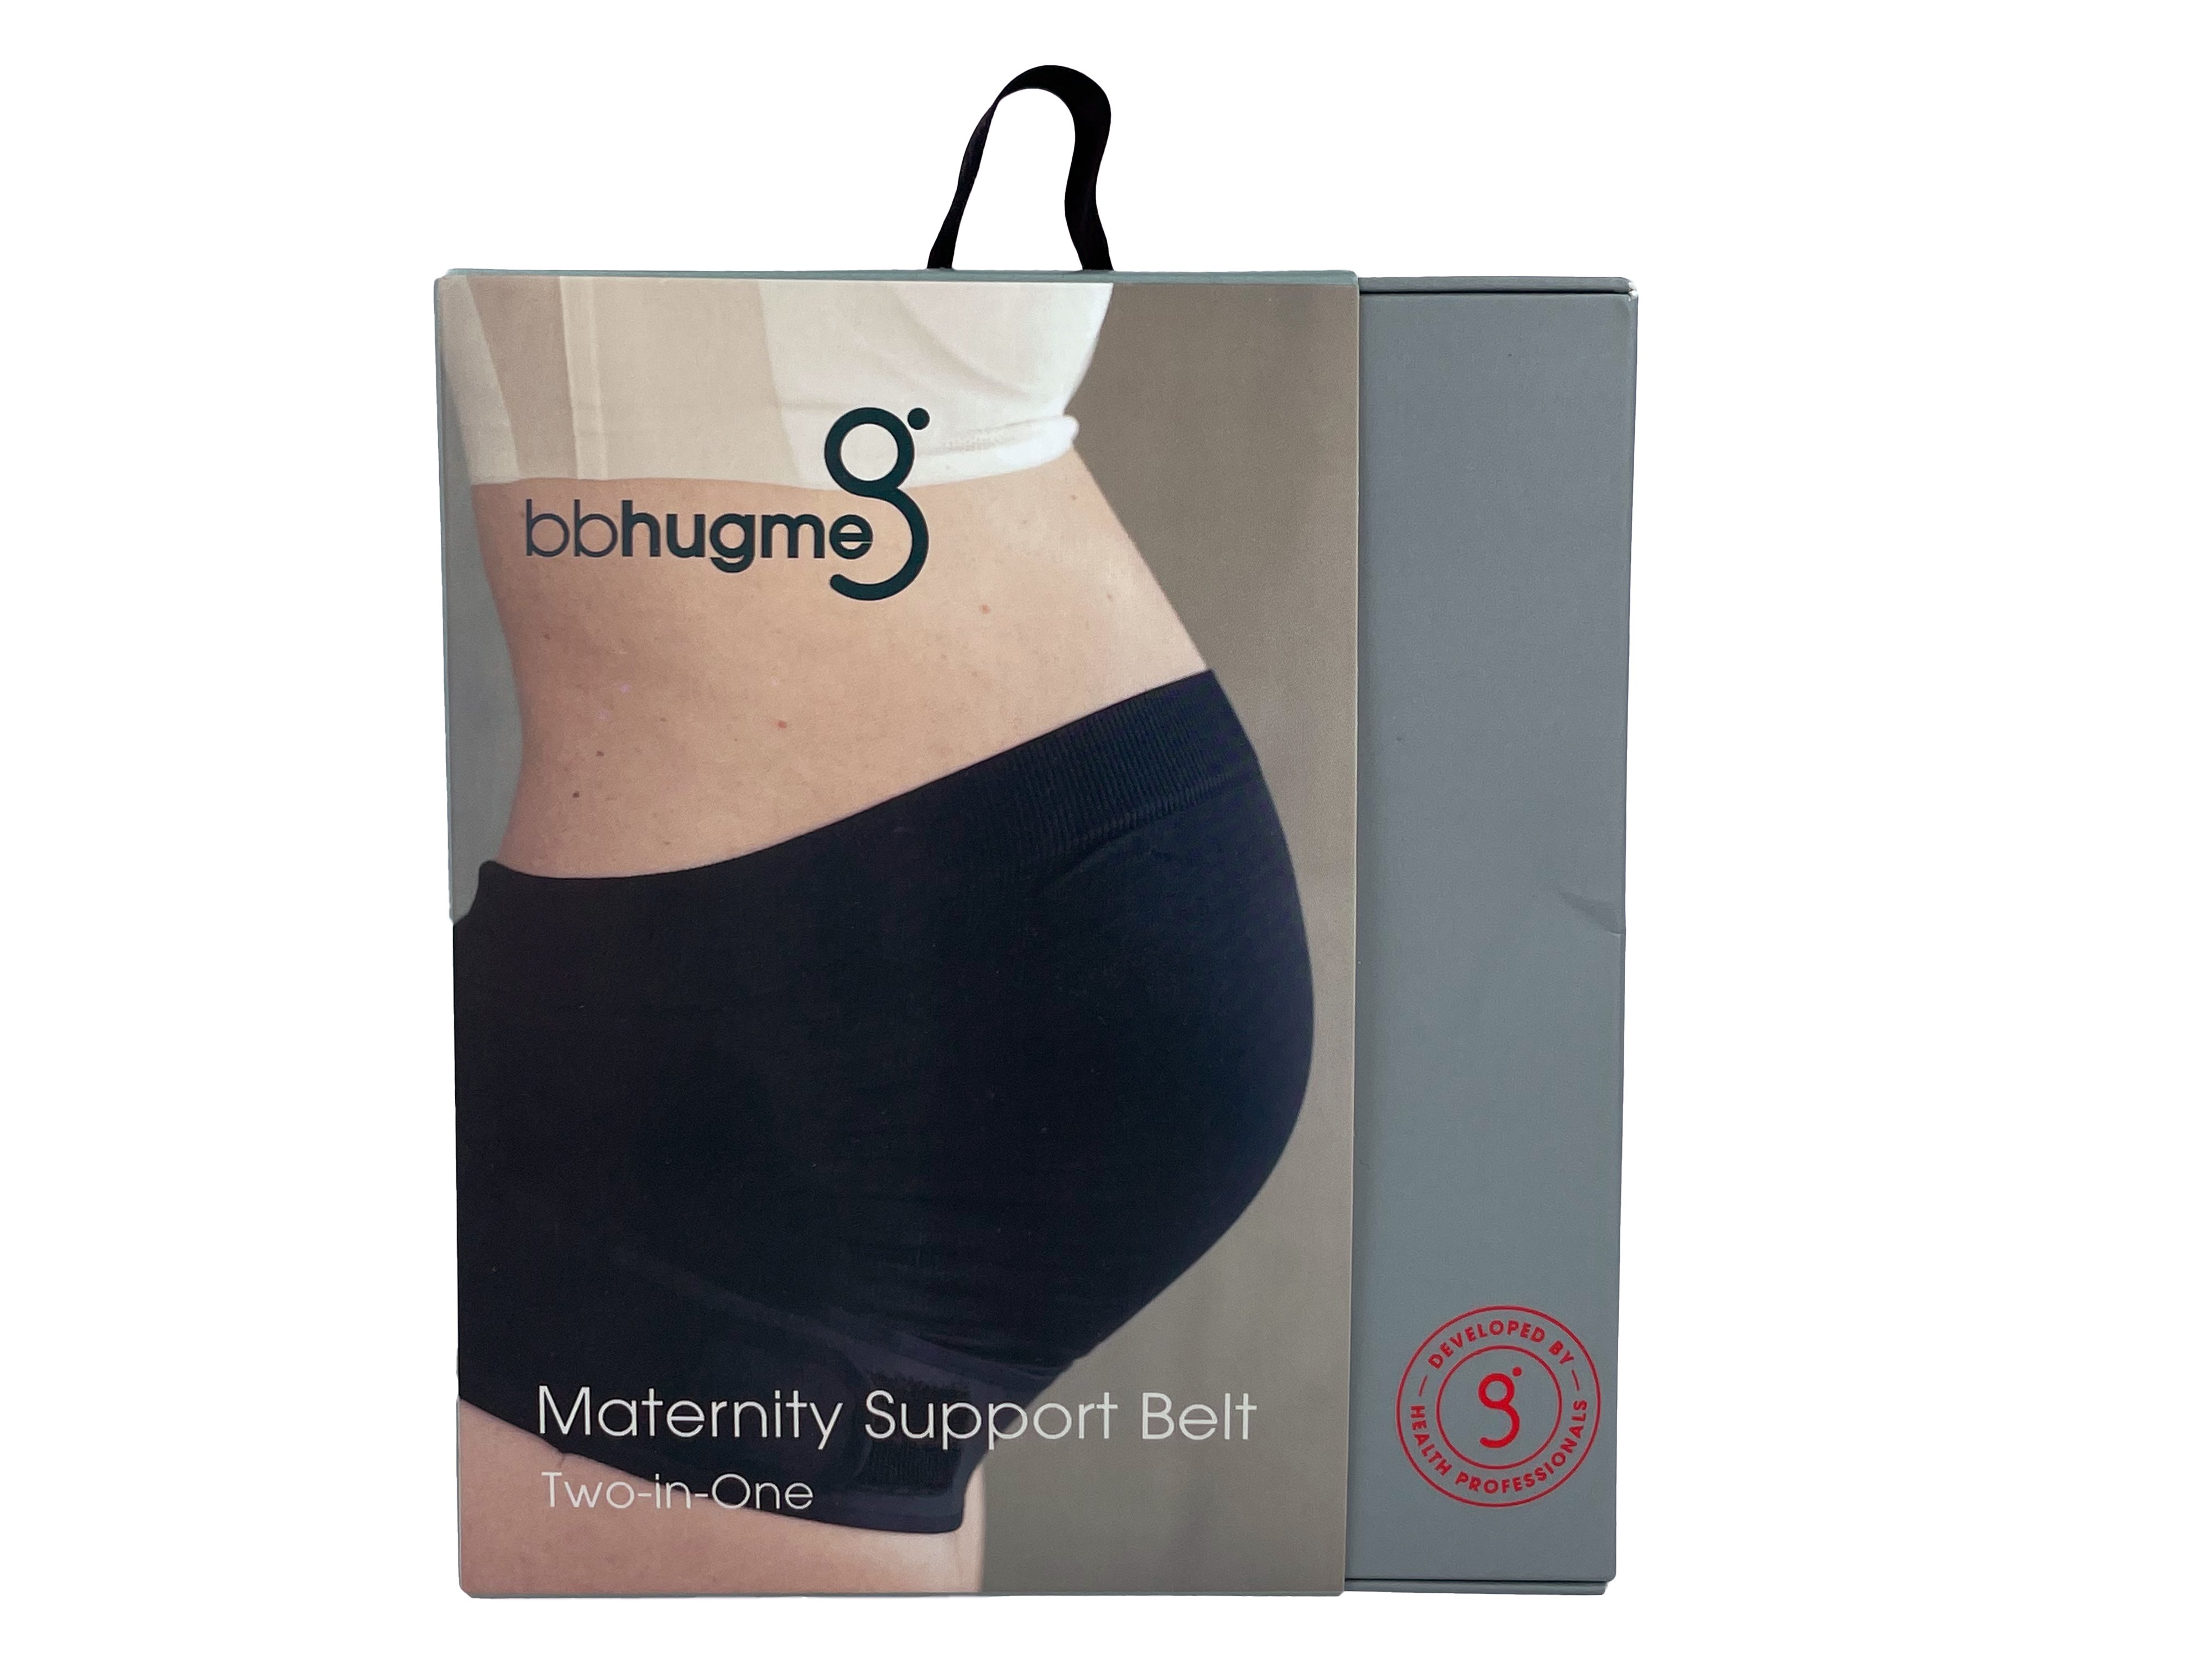 bbhugme Maternity Support Belt Black, M/L, 1 stk.